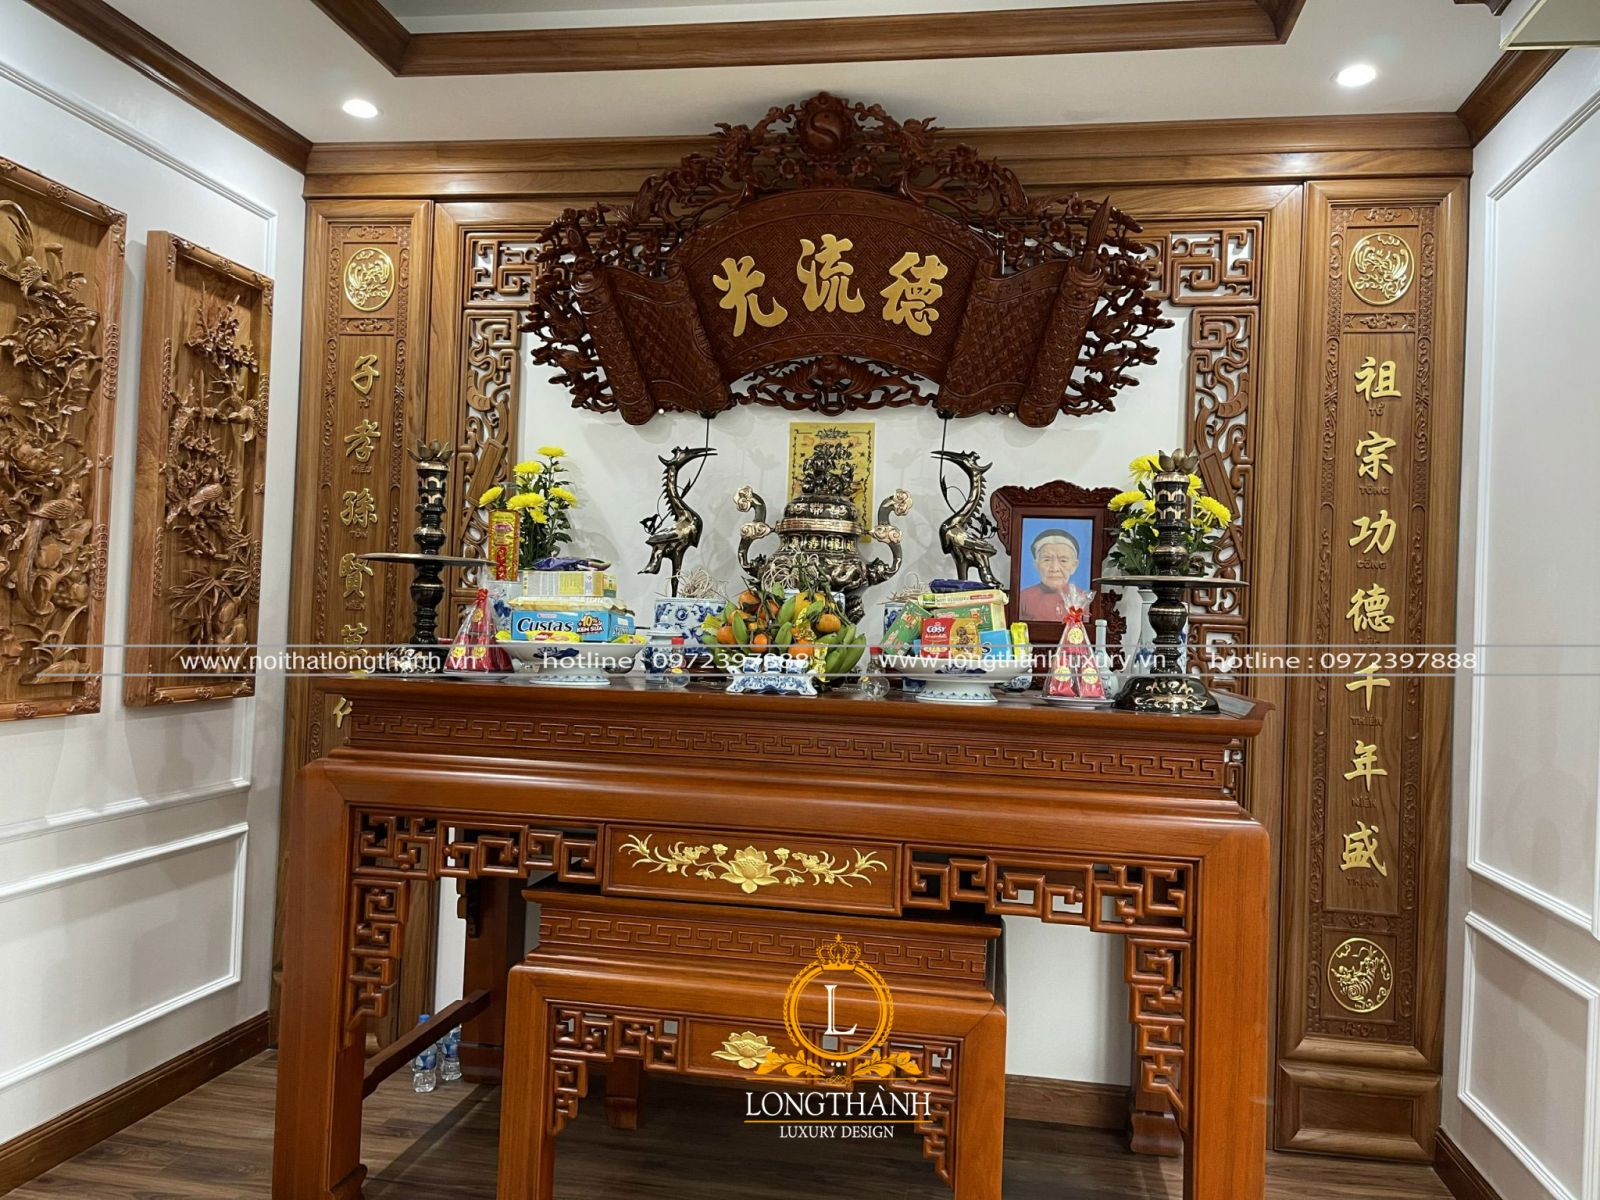 Thi công nội thất phòng thờ biệt thự tại nhà anh Thái - Hà Nội